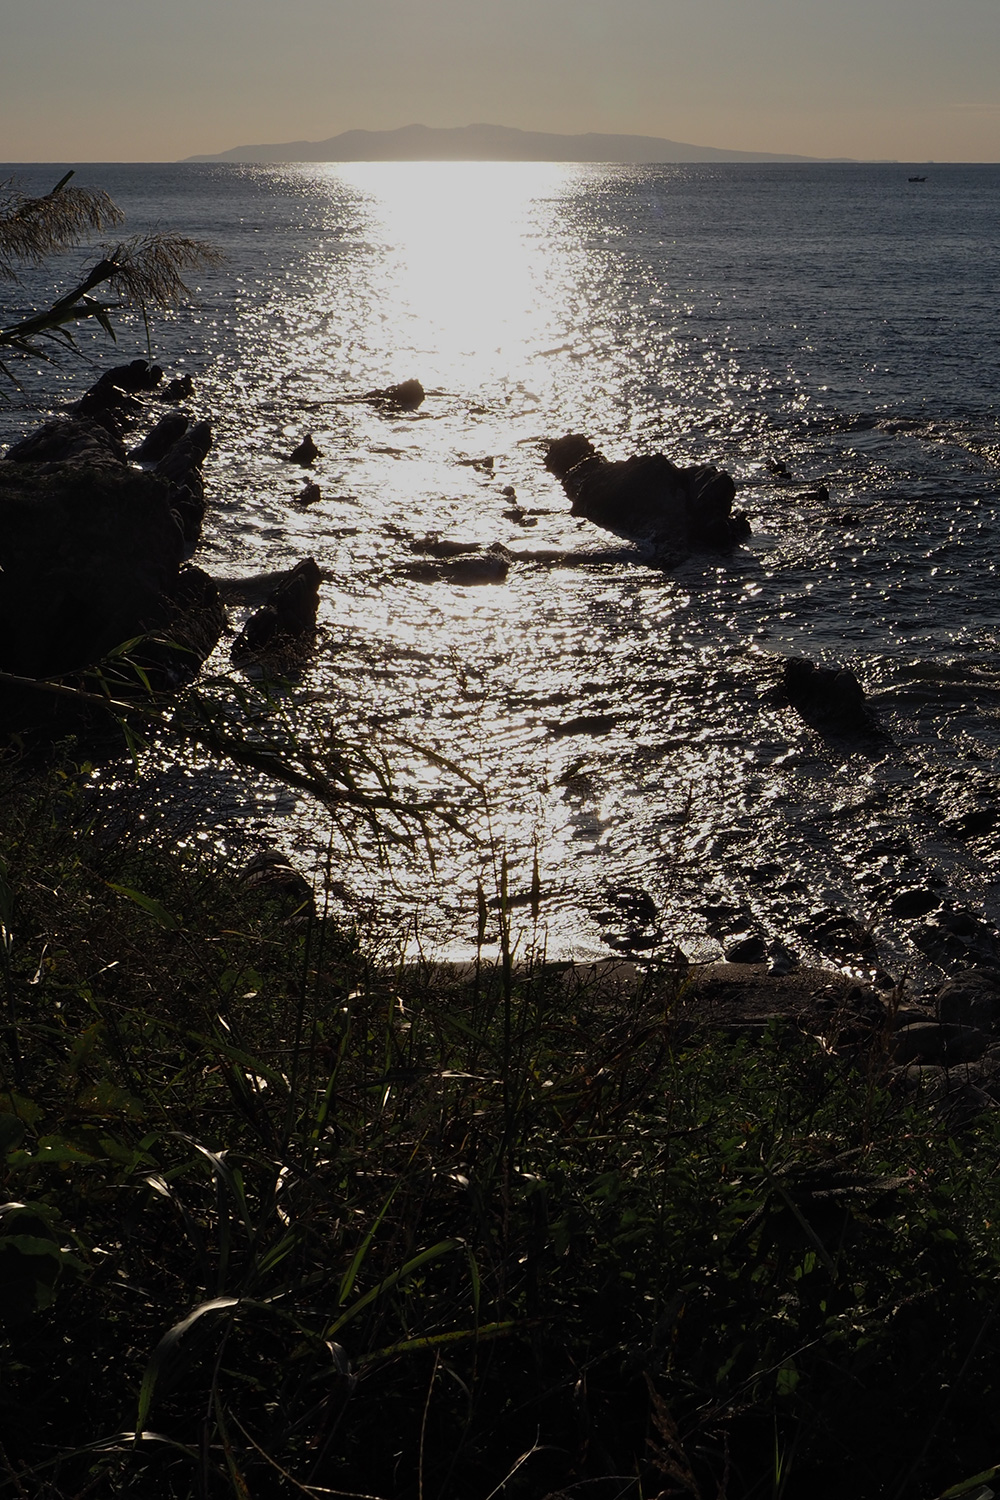 駒ヶ崎神社近くから海を眺めると、遠くに伊豆大島が見える。明治時代、マグロを追って伊豆諸島あたりまでは行ったという。